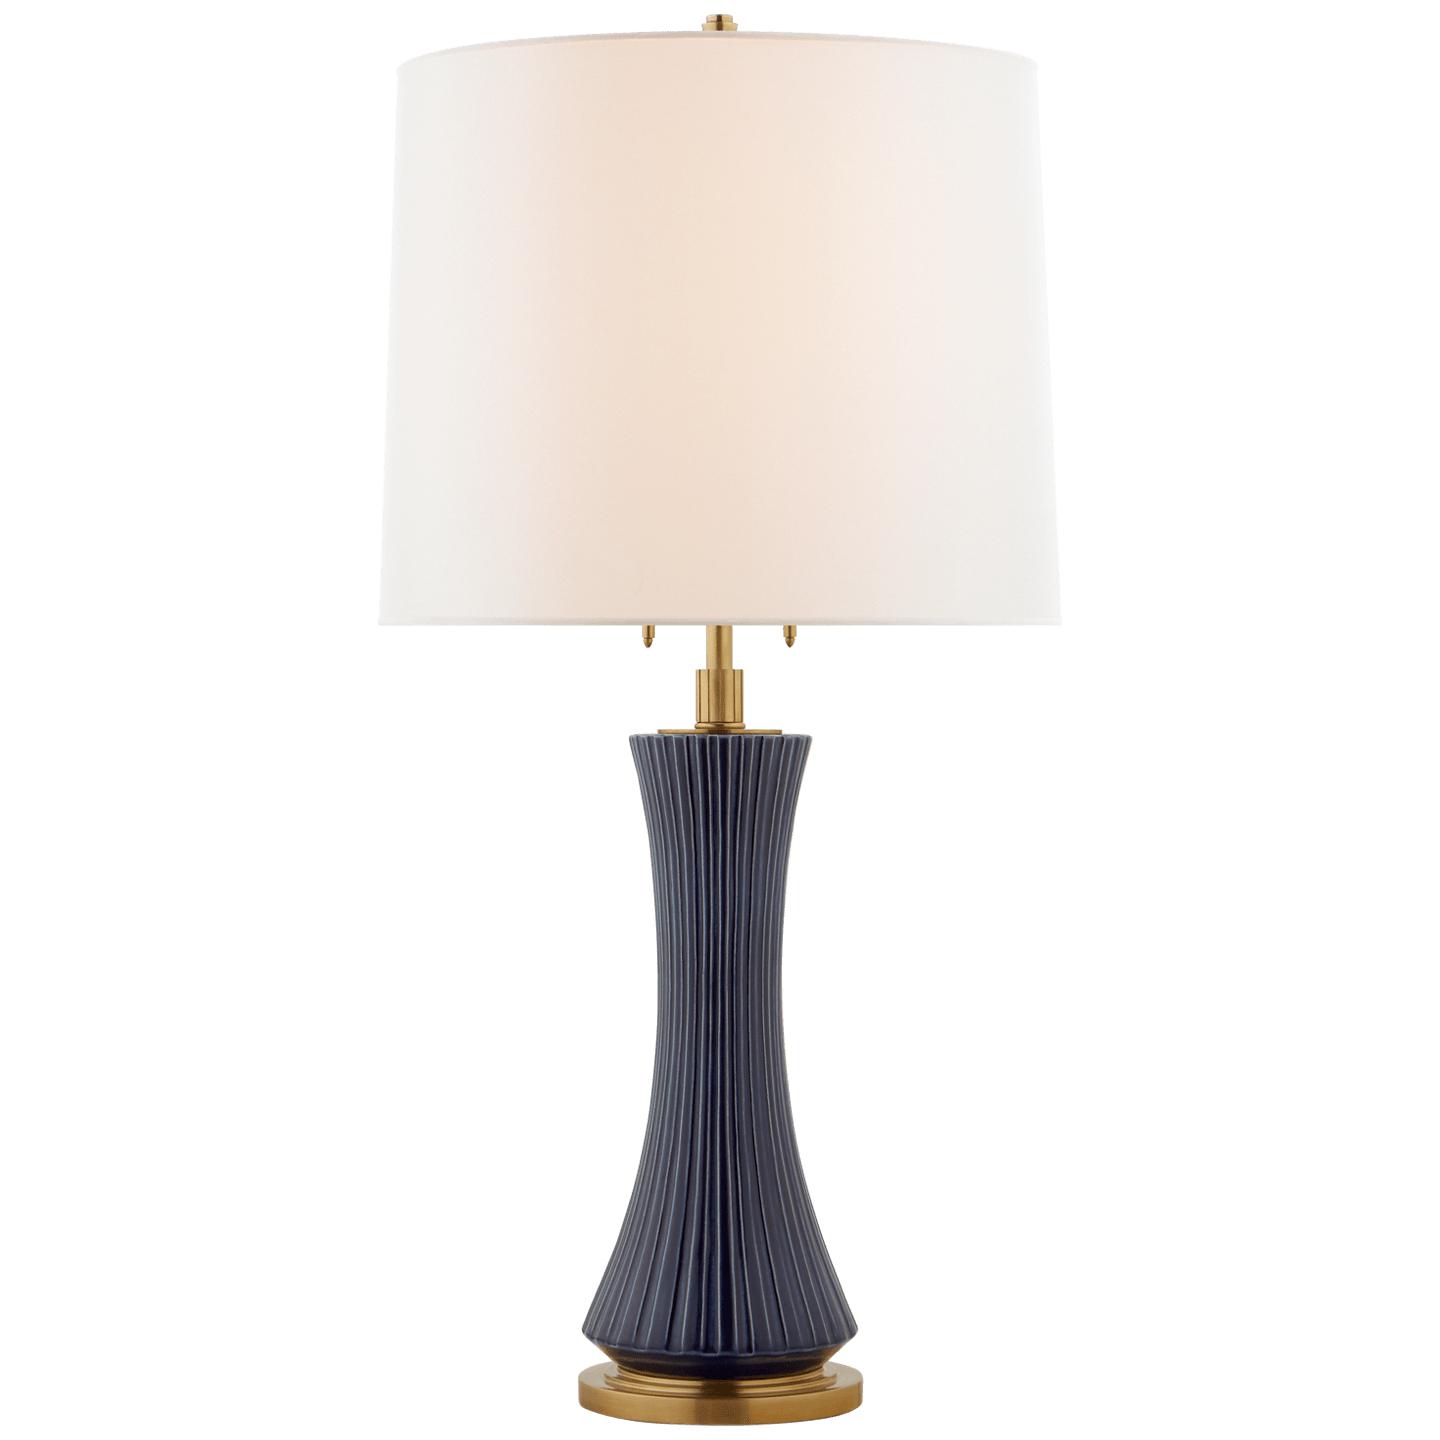 Купить Настольная лампа Elena Large Table Lamp в интернет-магазине roooms.ru